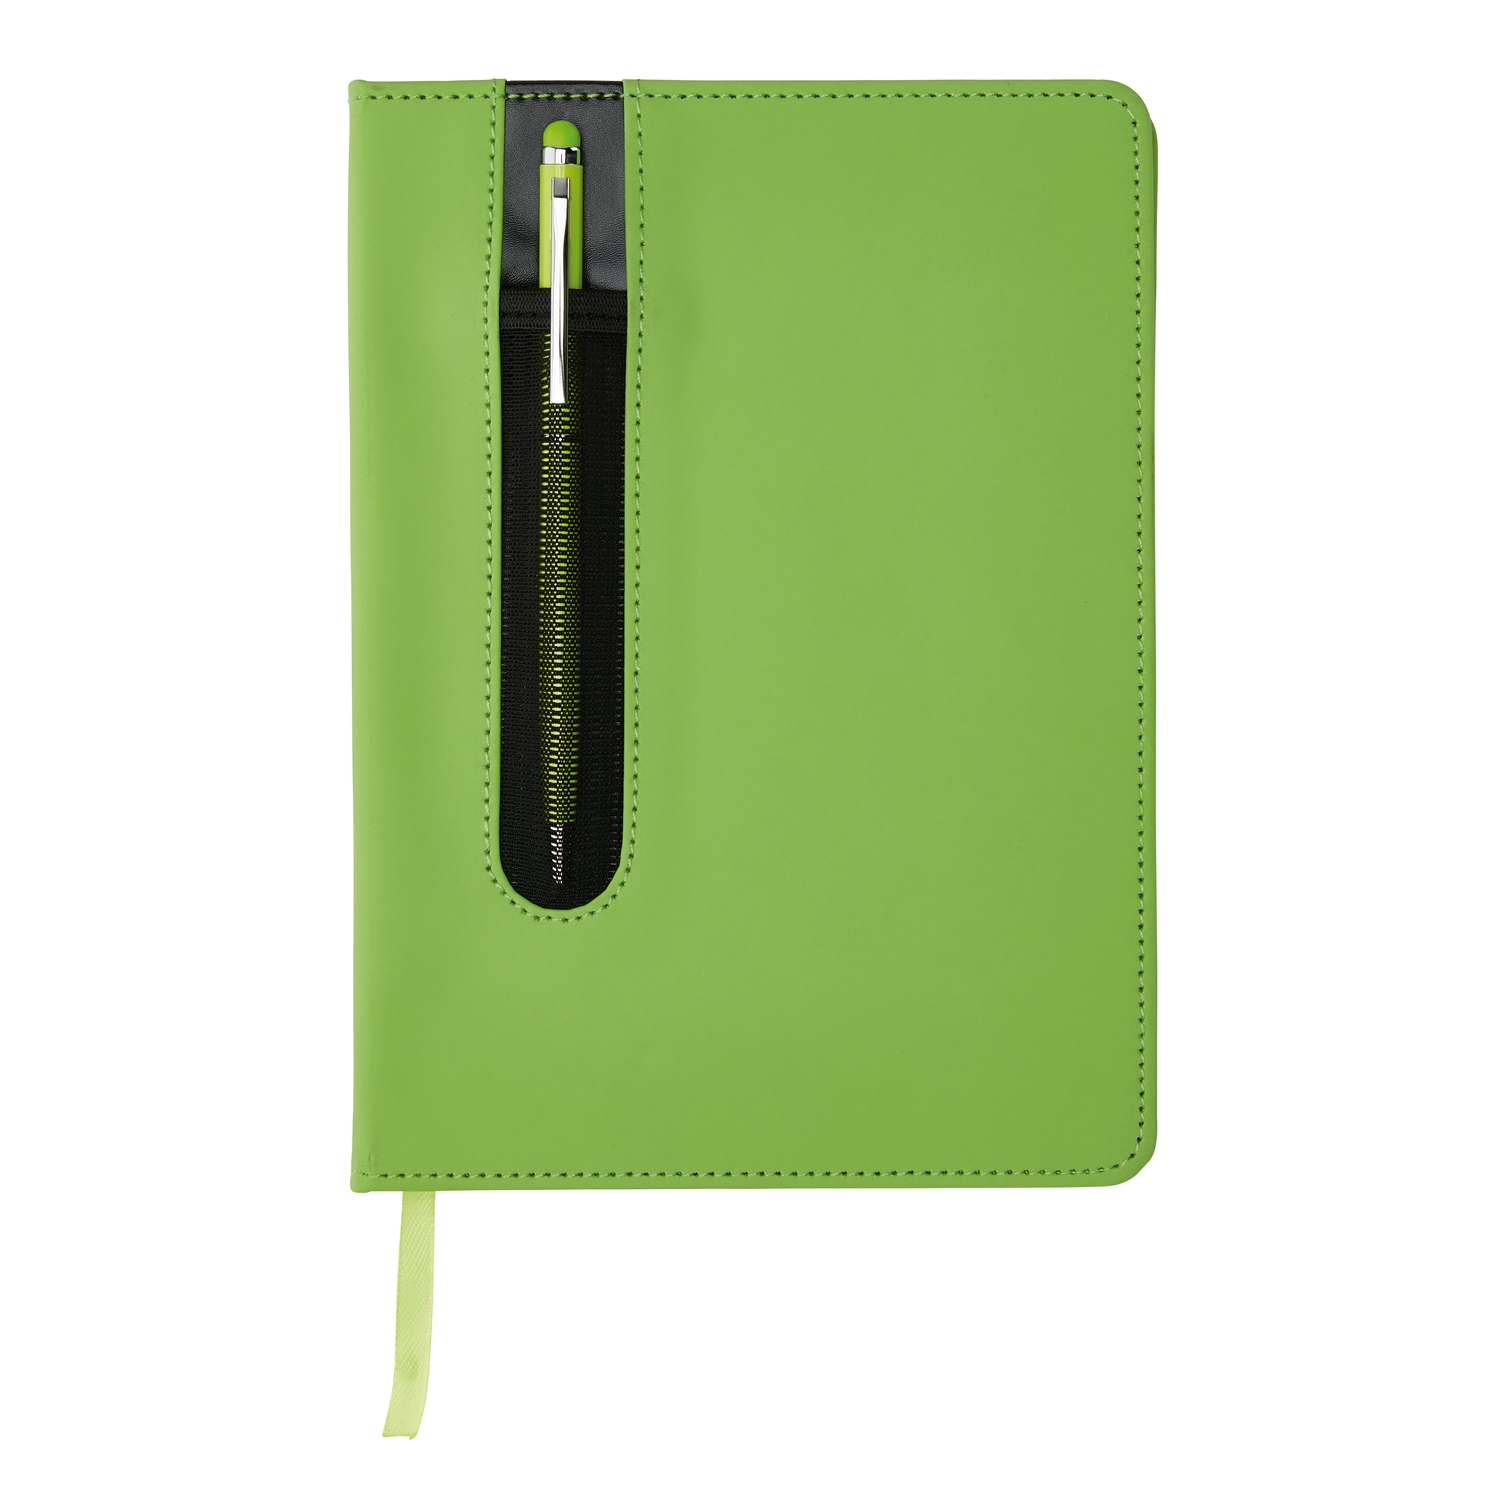 Блокнот для записей Deluxe формата A5 и ручка-стилус, зеленый, бумага; нержавеющая сталь